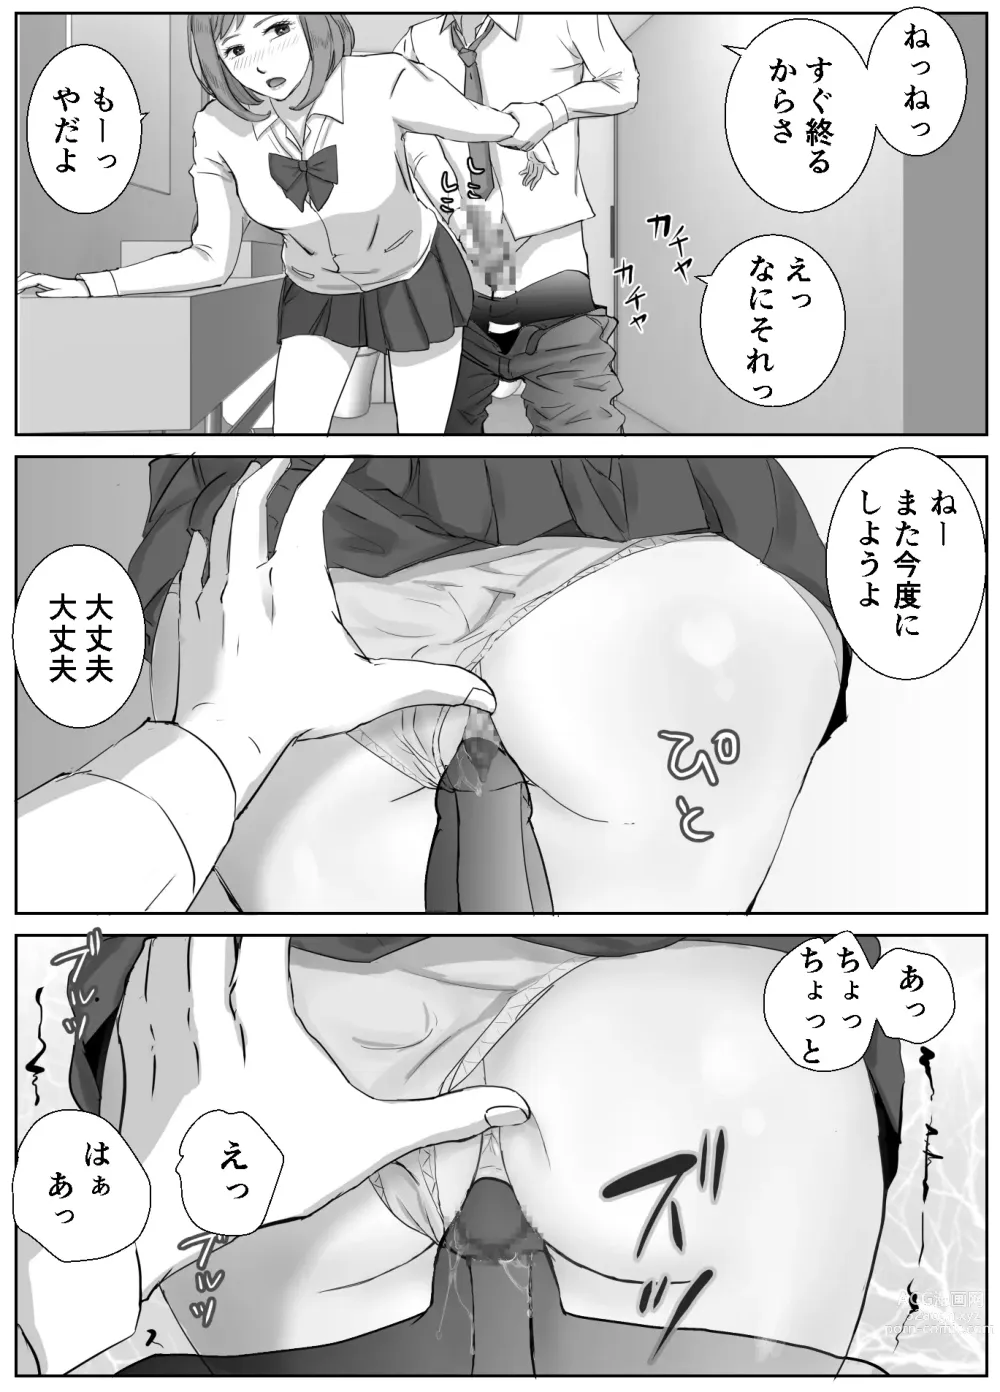 Page 6 of doujinshi Ano Hi no Uso 1